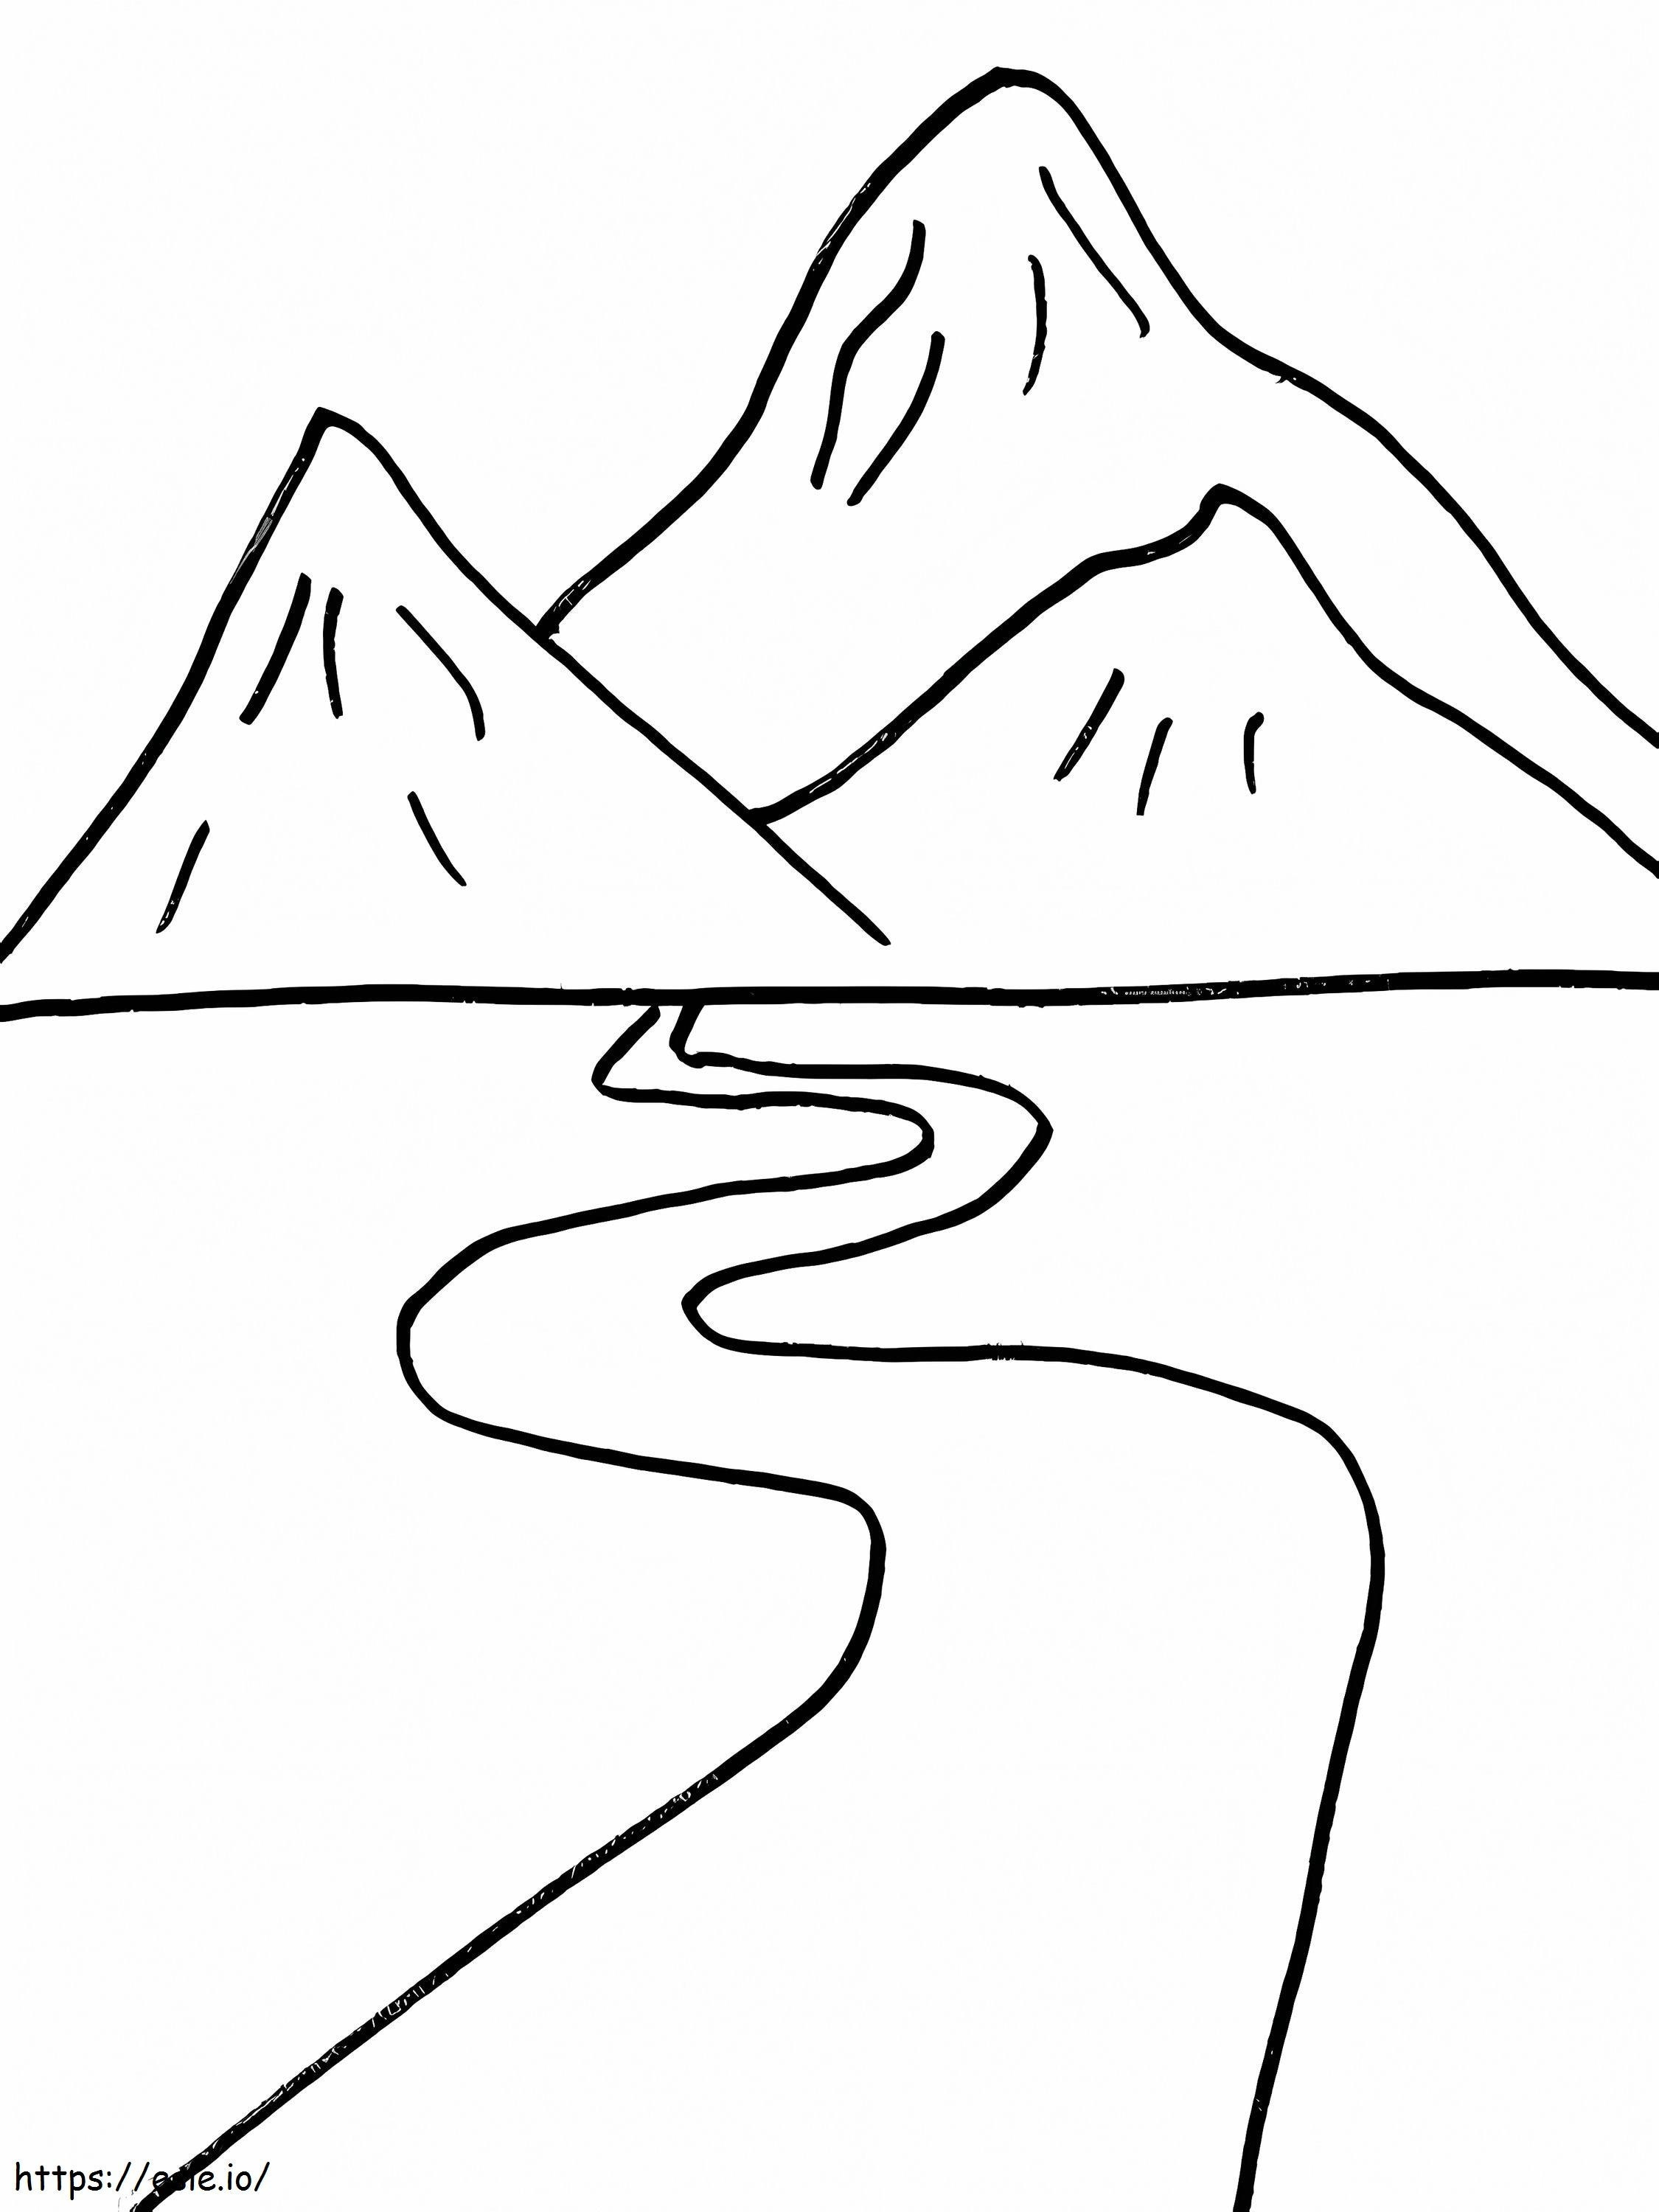 Einfacher Fluss und Berge ausmalbilder